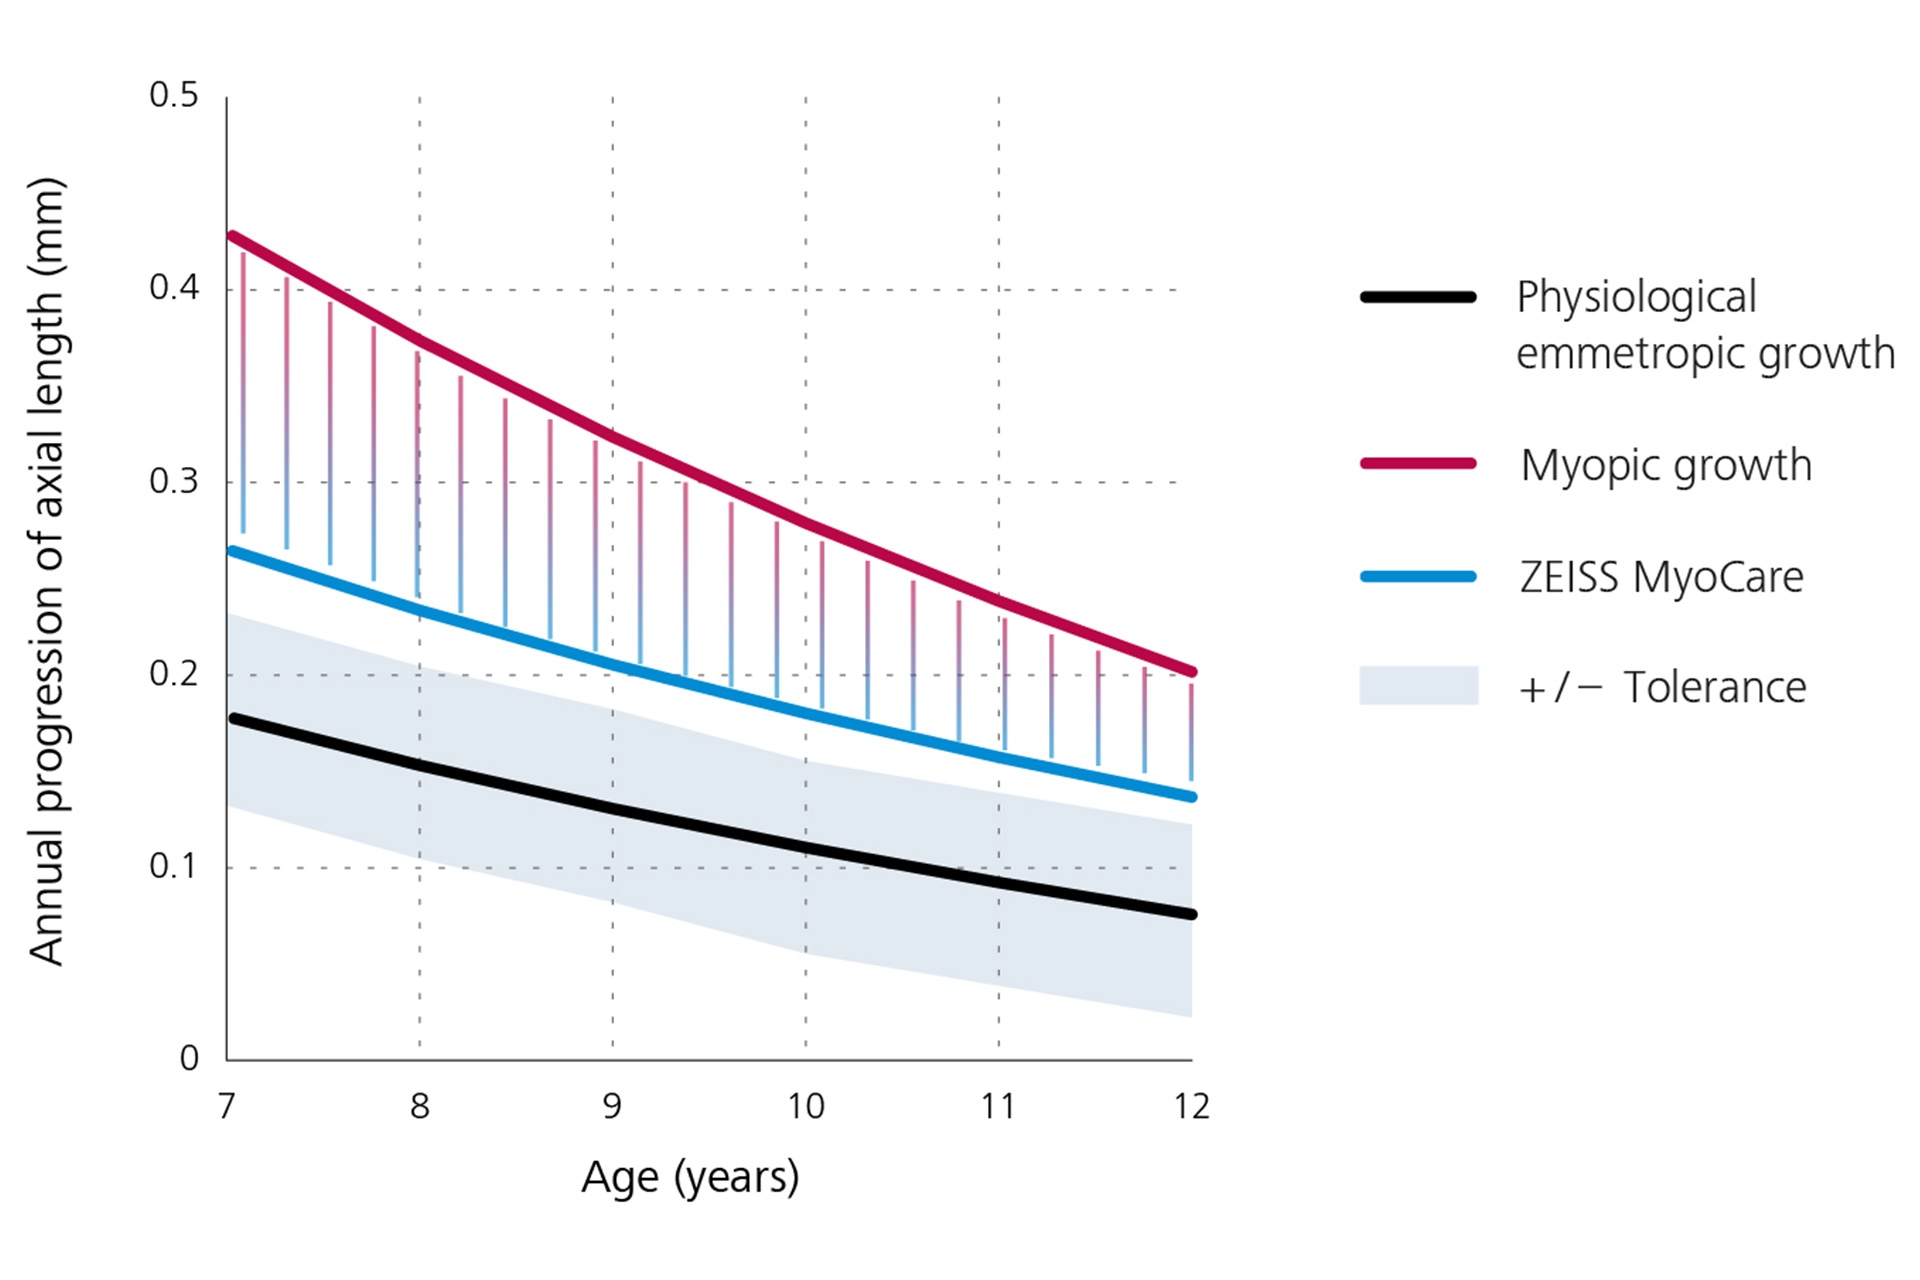 Un graphique linéaire qui affiche une progression annuelle de la longueur axiale montre la croissance physiologique emmétrope en noir en bas, la croissance myope en rouge en haut, et les résultats des verres ZEISS MyoCare en bleu au centre. Ce graphique permet de déduire que la progression de la myopie est inférieure à la courbe de croissance en cas de port de verres ZEISS MyoCare.  